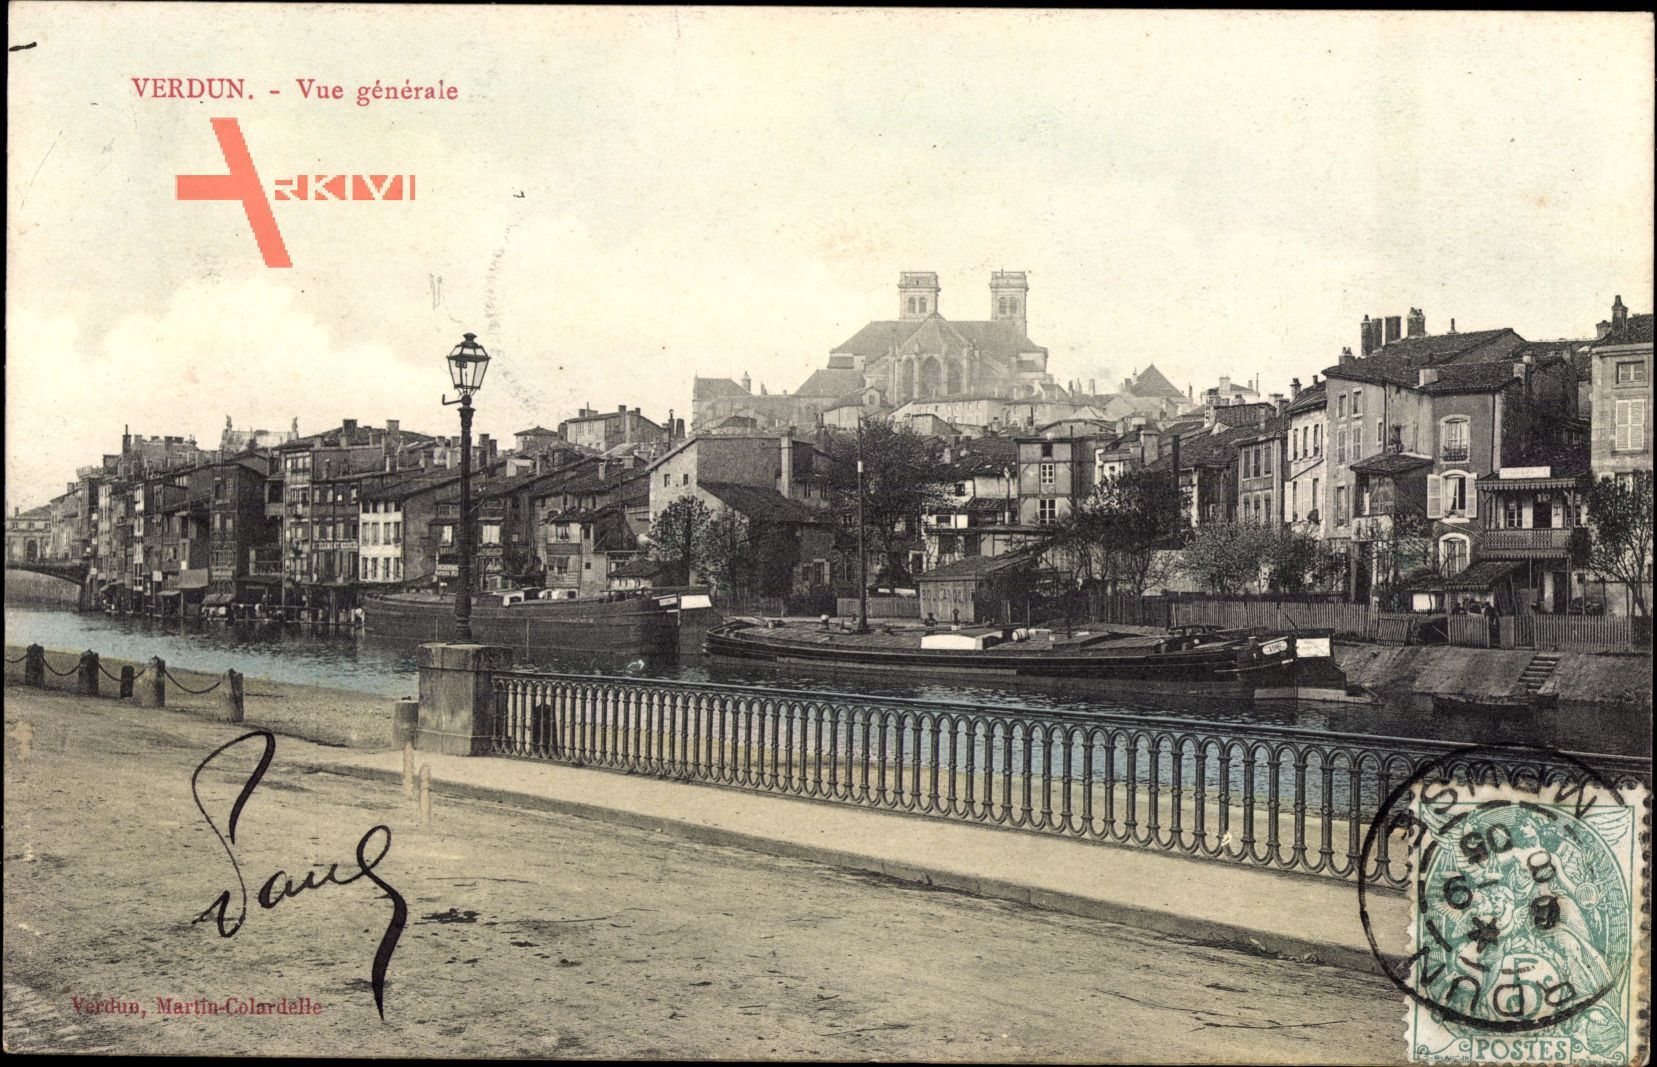 Verdun Meuse, Vue generale, Blick auf den Ort, Flusspartie, Straße, Lastkahn